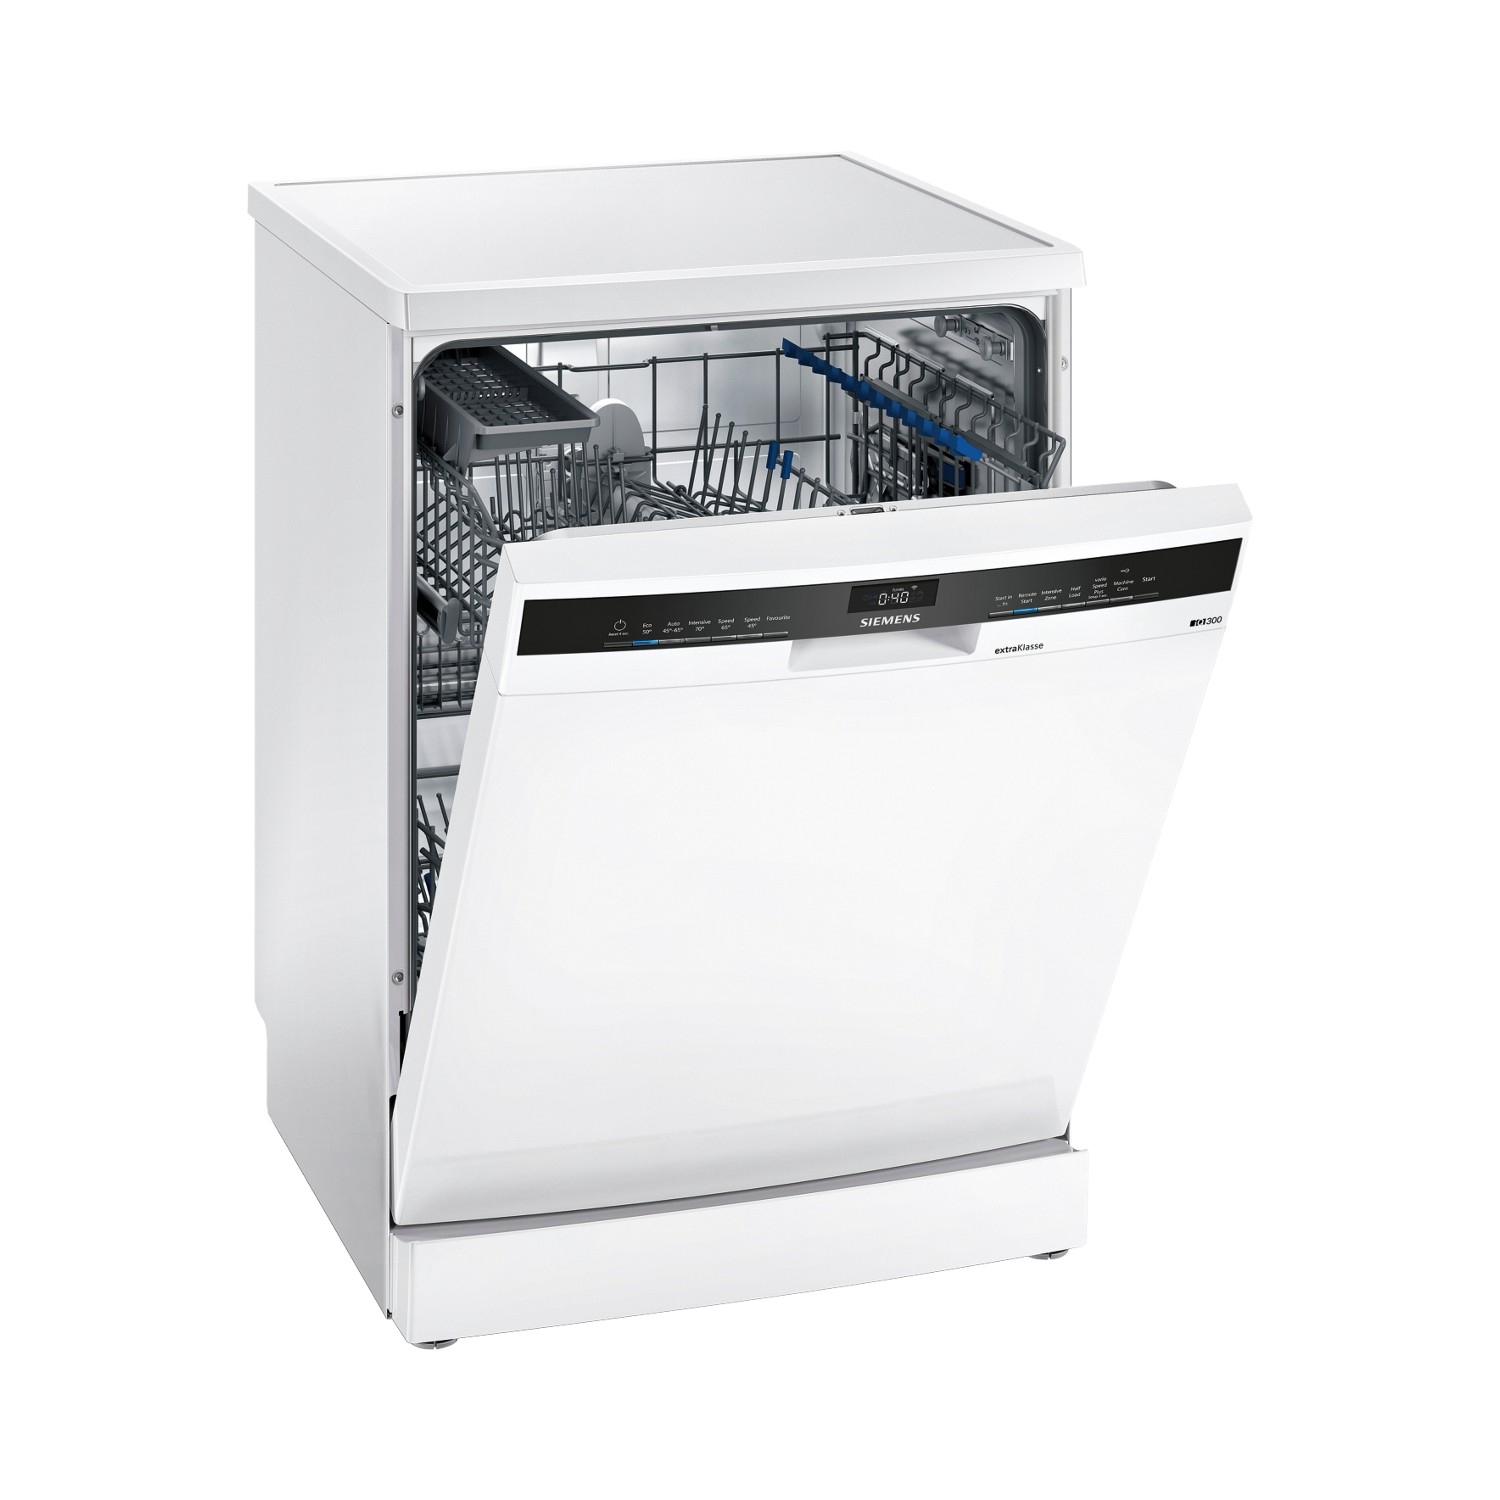 Siemens extraKlasse SN23HW64AG Full Size Dishwasher - White - 13 Place Settings - 0